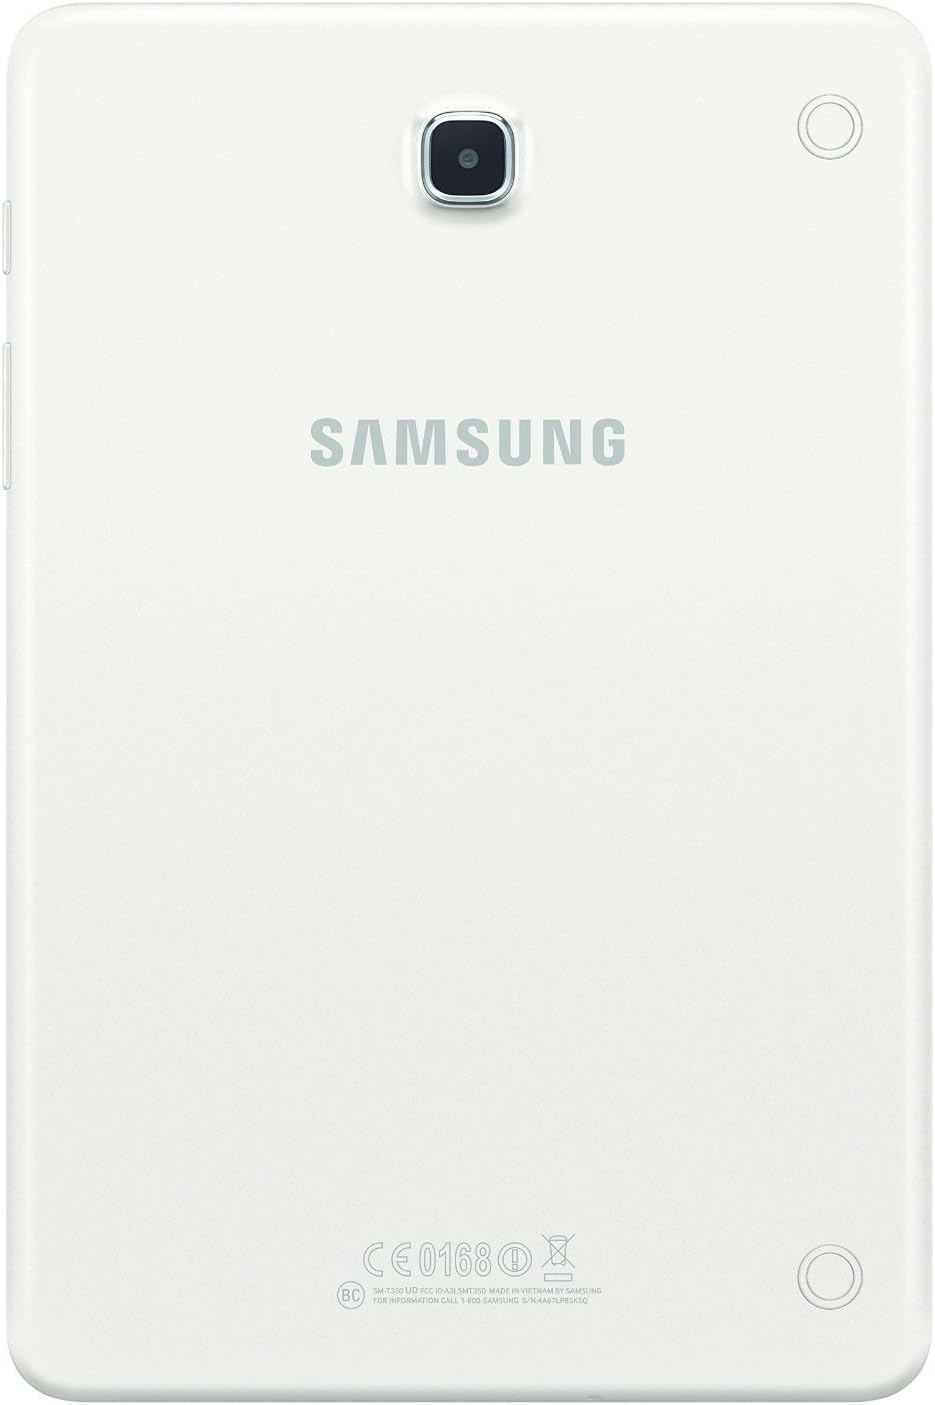 Samsung - Galaxy Tab A - 8" - 16GB - White - SM-T350NZWAXAR